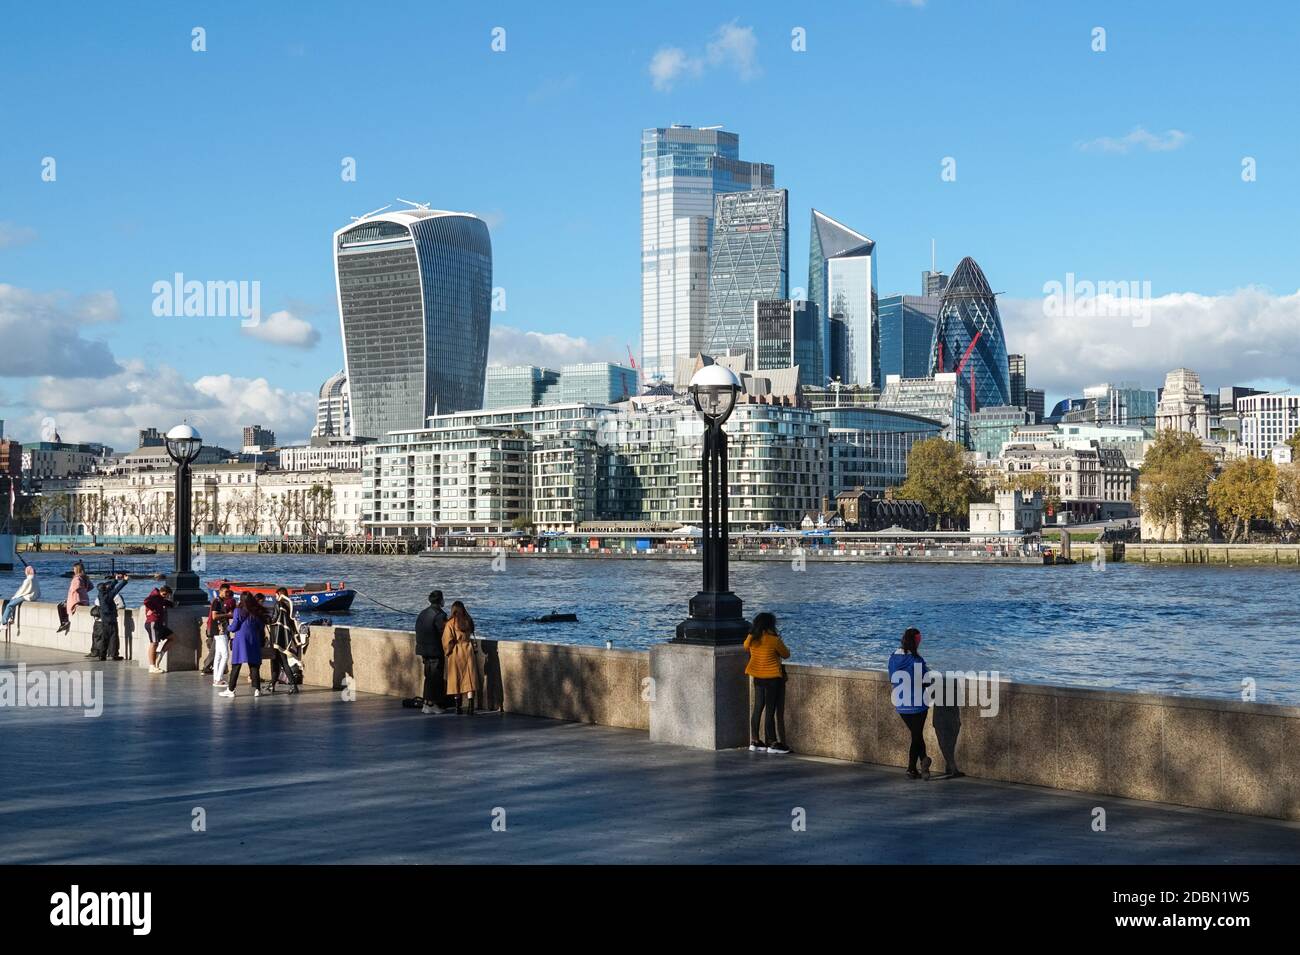 Les gens qui apprécient la journée ensoleillée à southbank of River Thames avec les gratte-ciels de la ville en arrière-plan, Londres Angleterre Royaume-Uni Banque D'Images